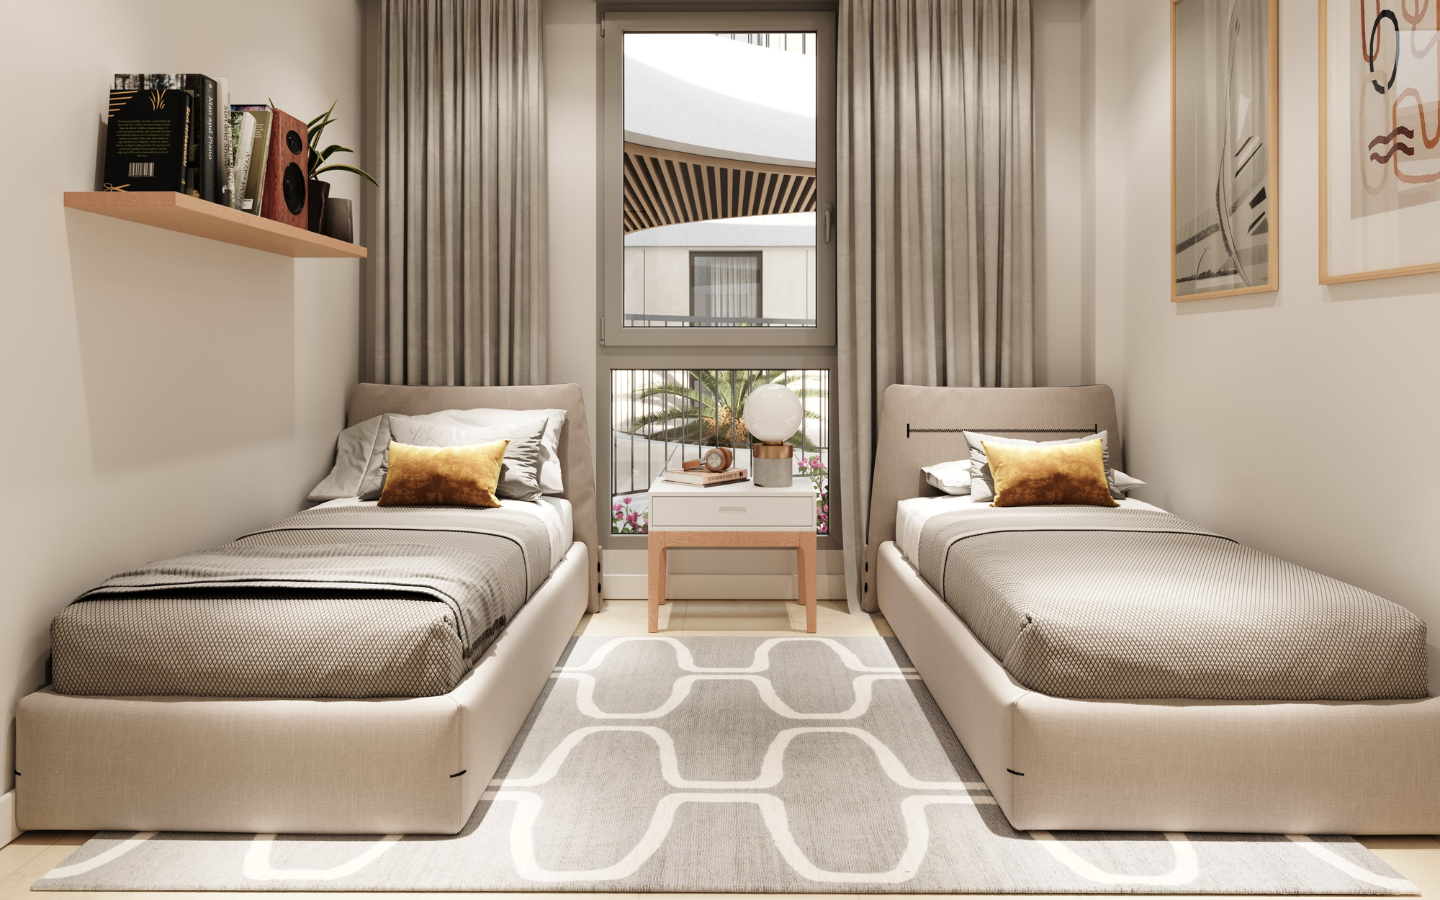 Nouveau projet d'appartements de 2 et 3 chambres près de la plage , Marbella